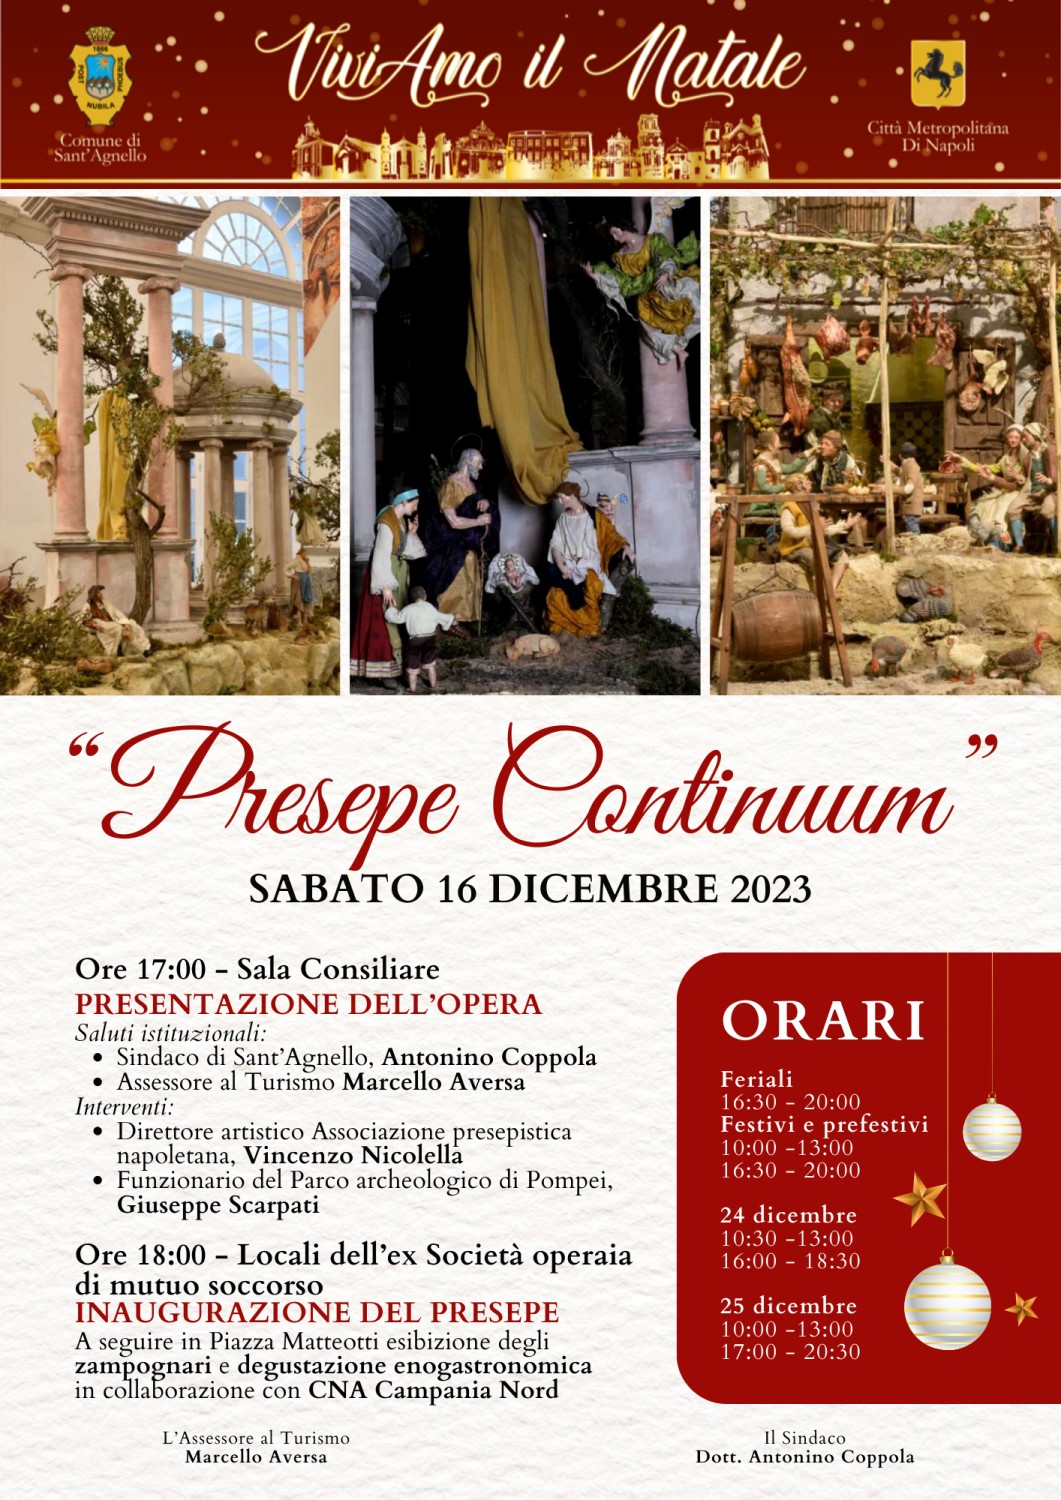 Inaugurazione del "Presepe Continuum" sabato 16 a Sant'Agnello - Gazzetta  di Napoli